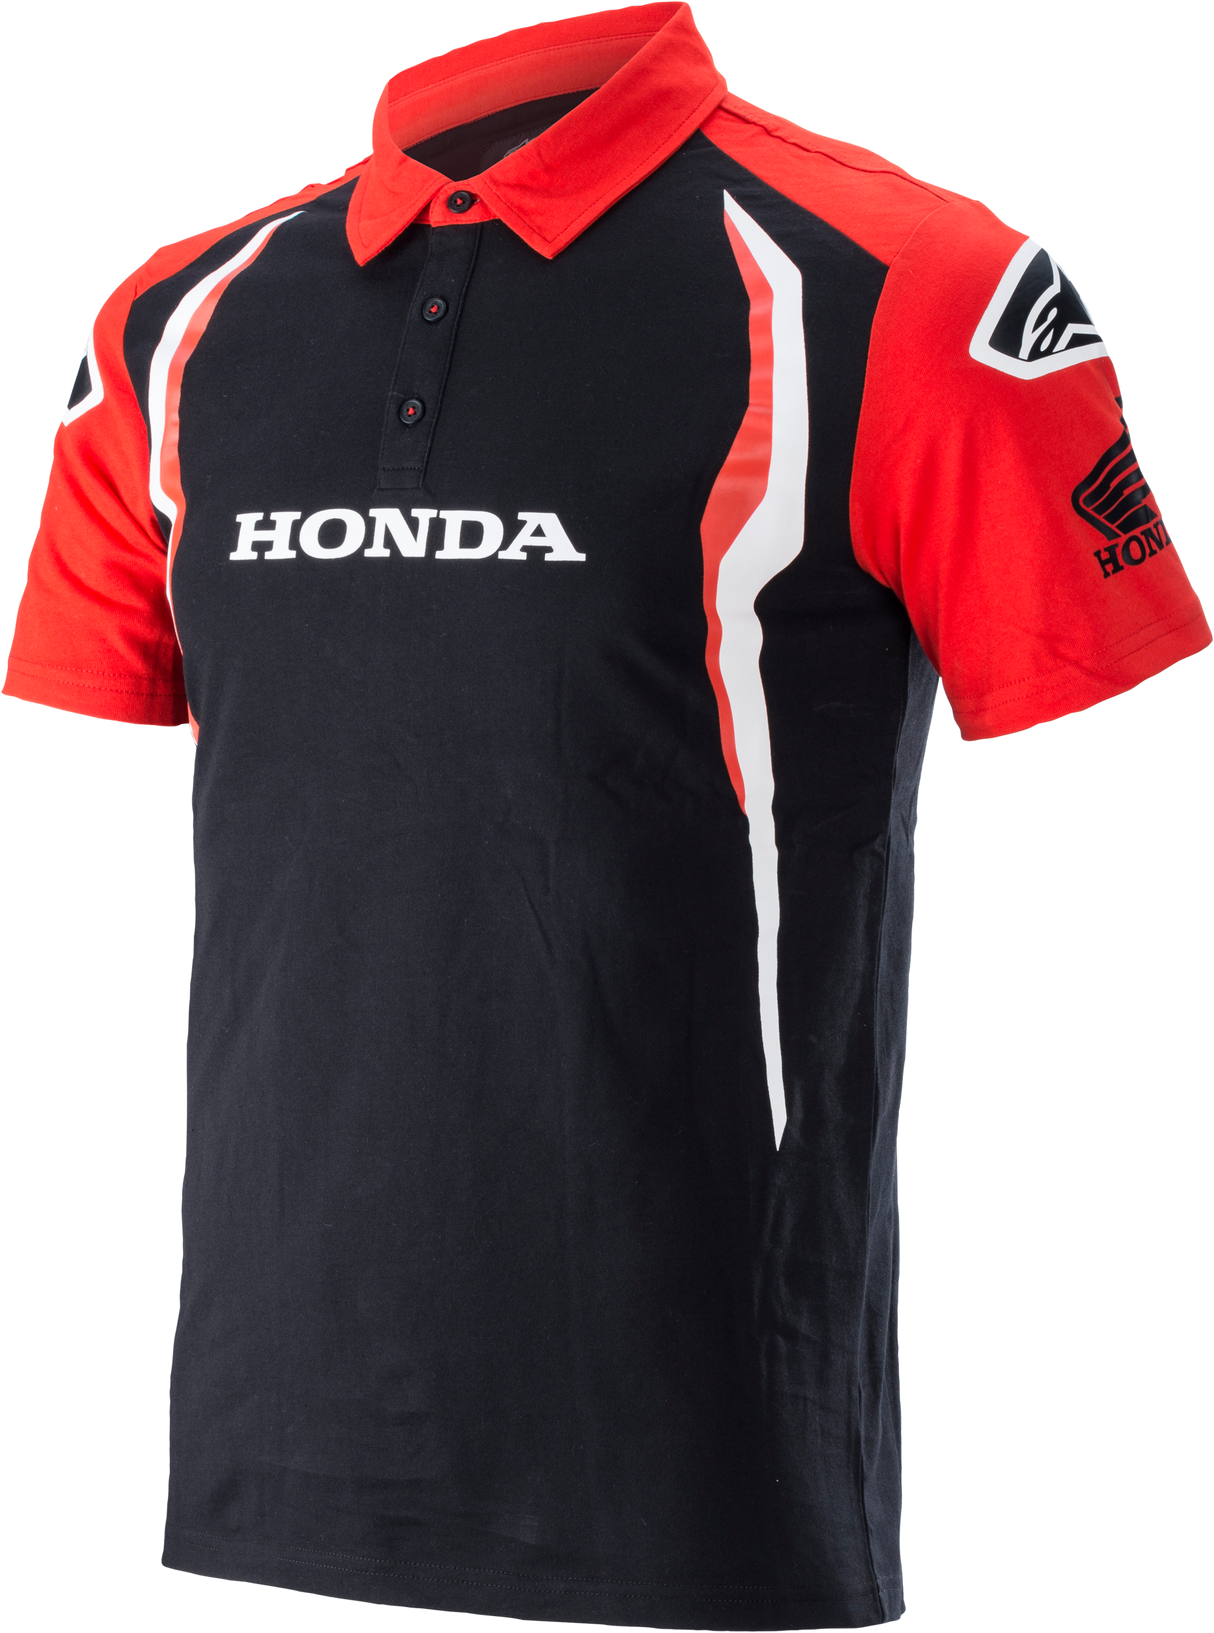 Honda Polo Red/Black Lg